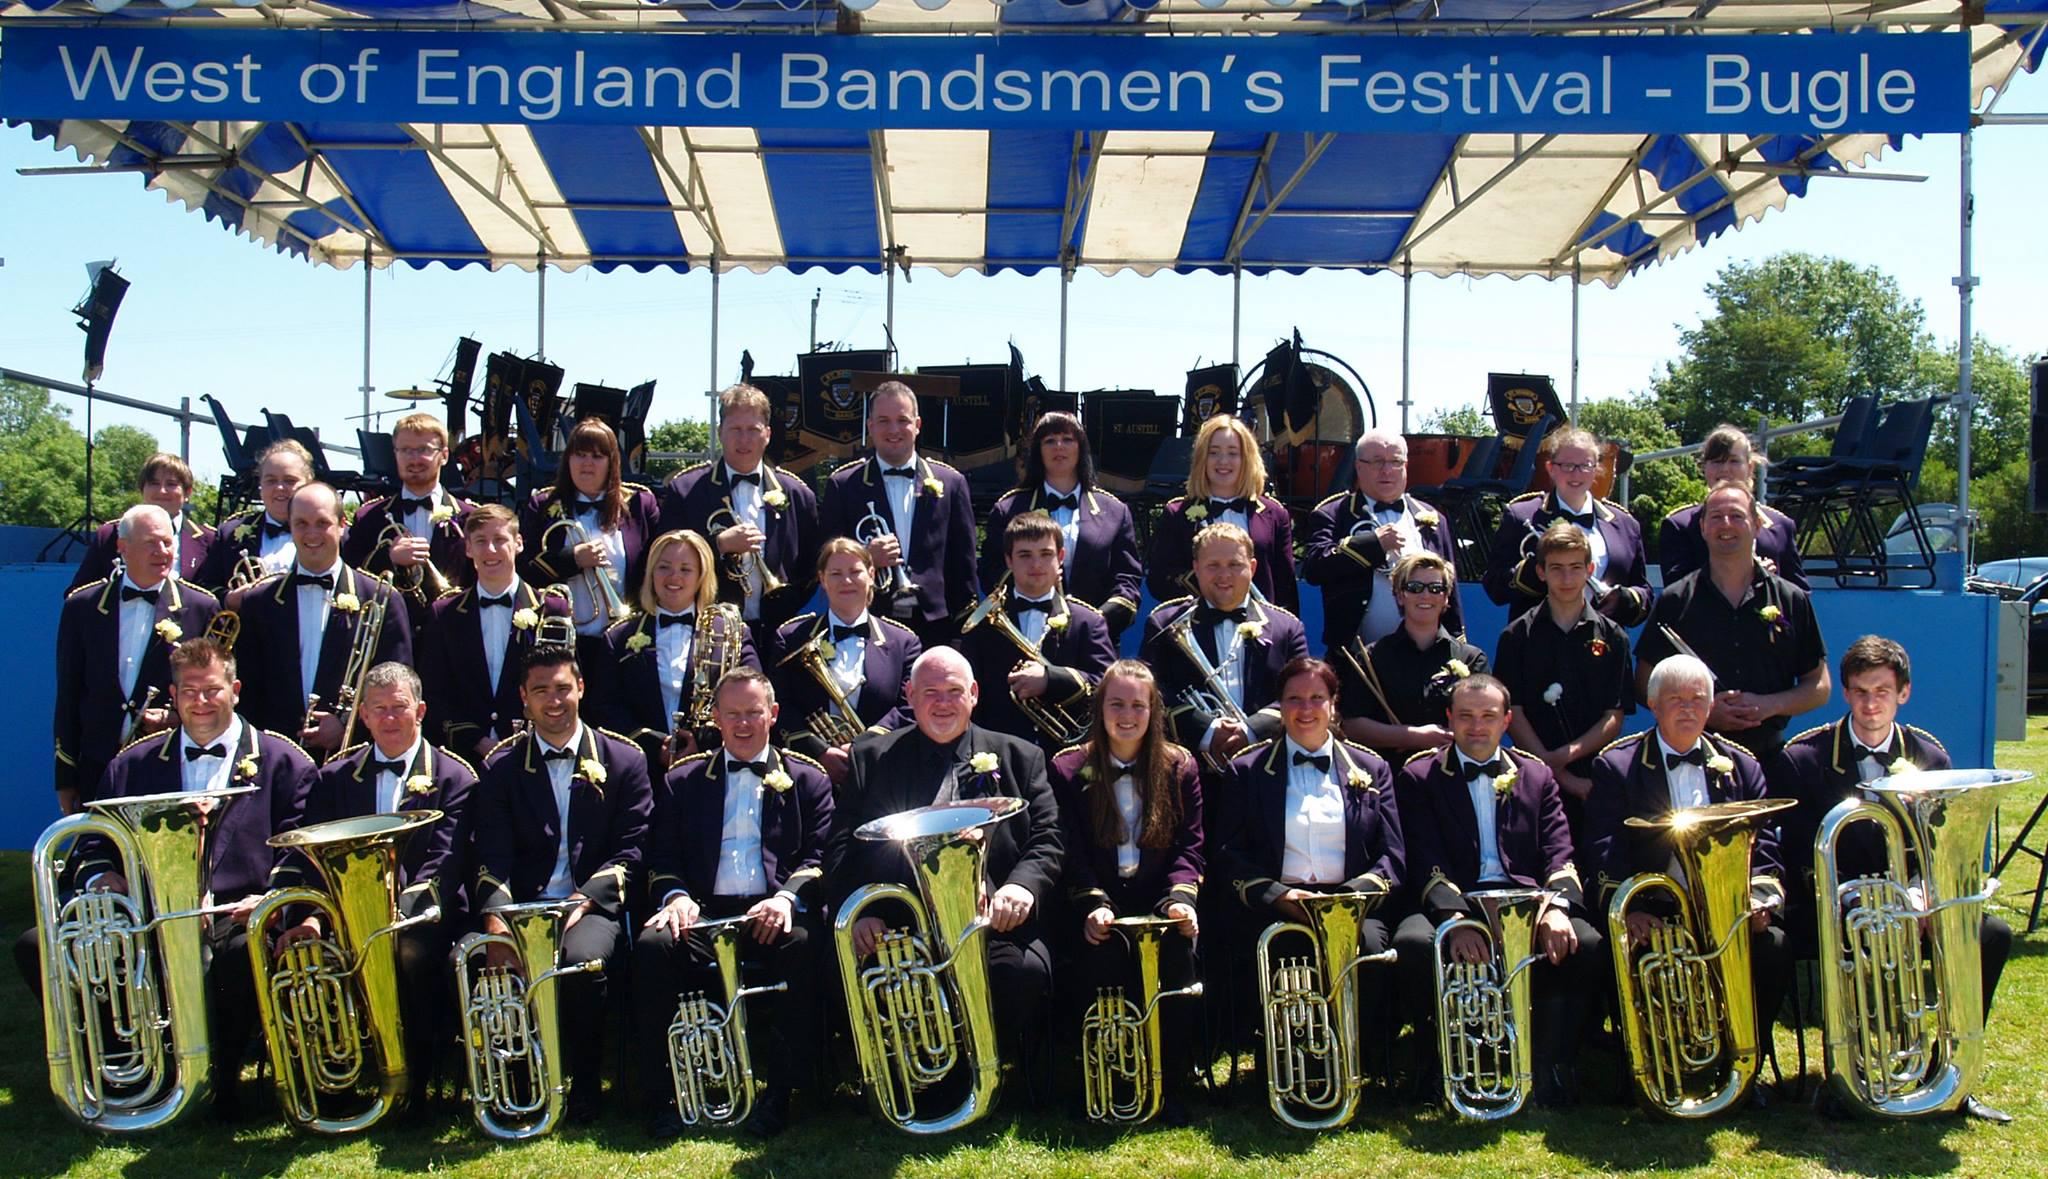 St Austell Town Brass Band